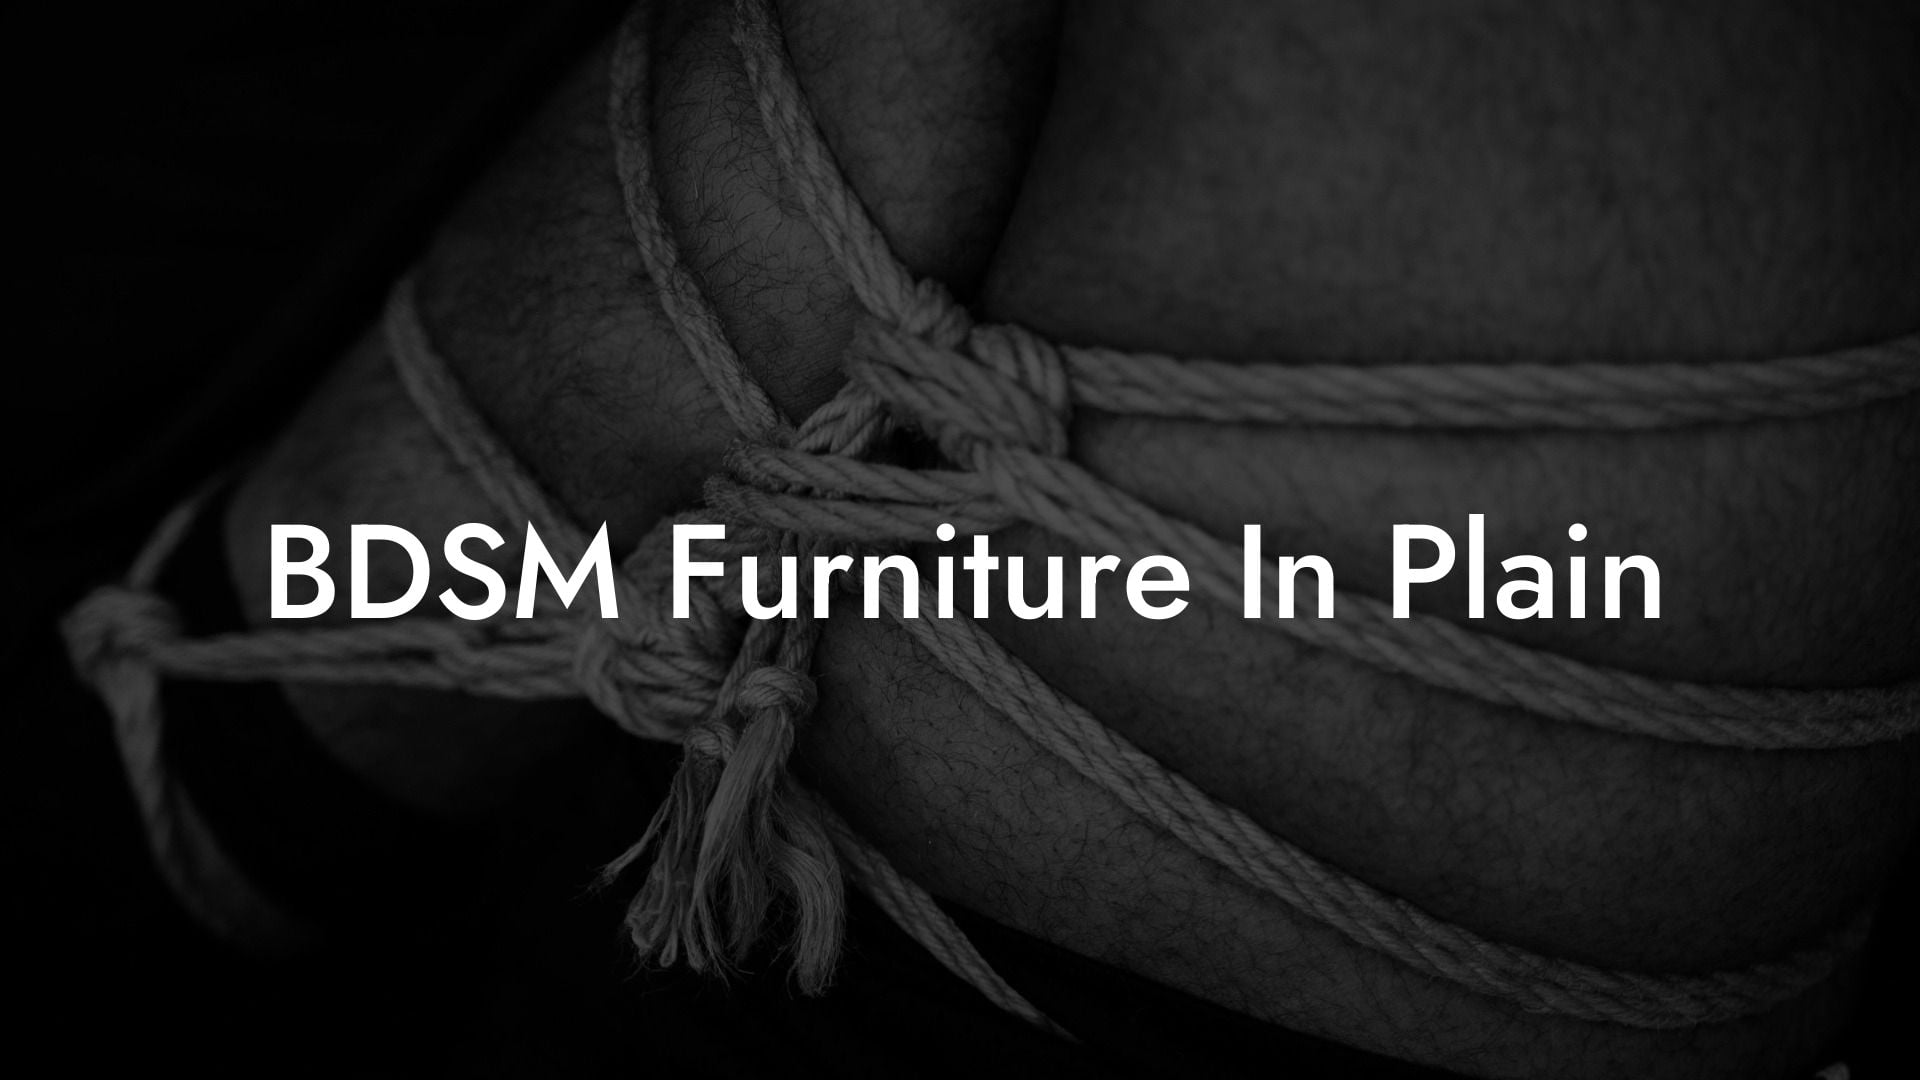 BDSM Furniture In Plain